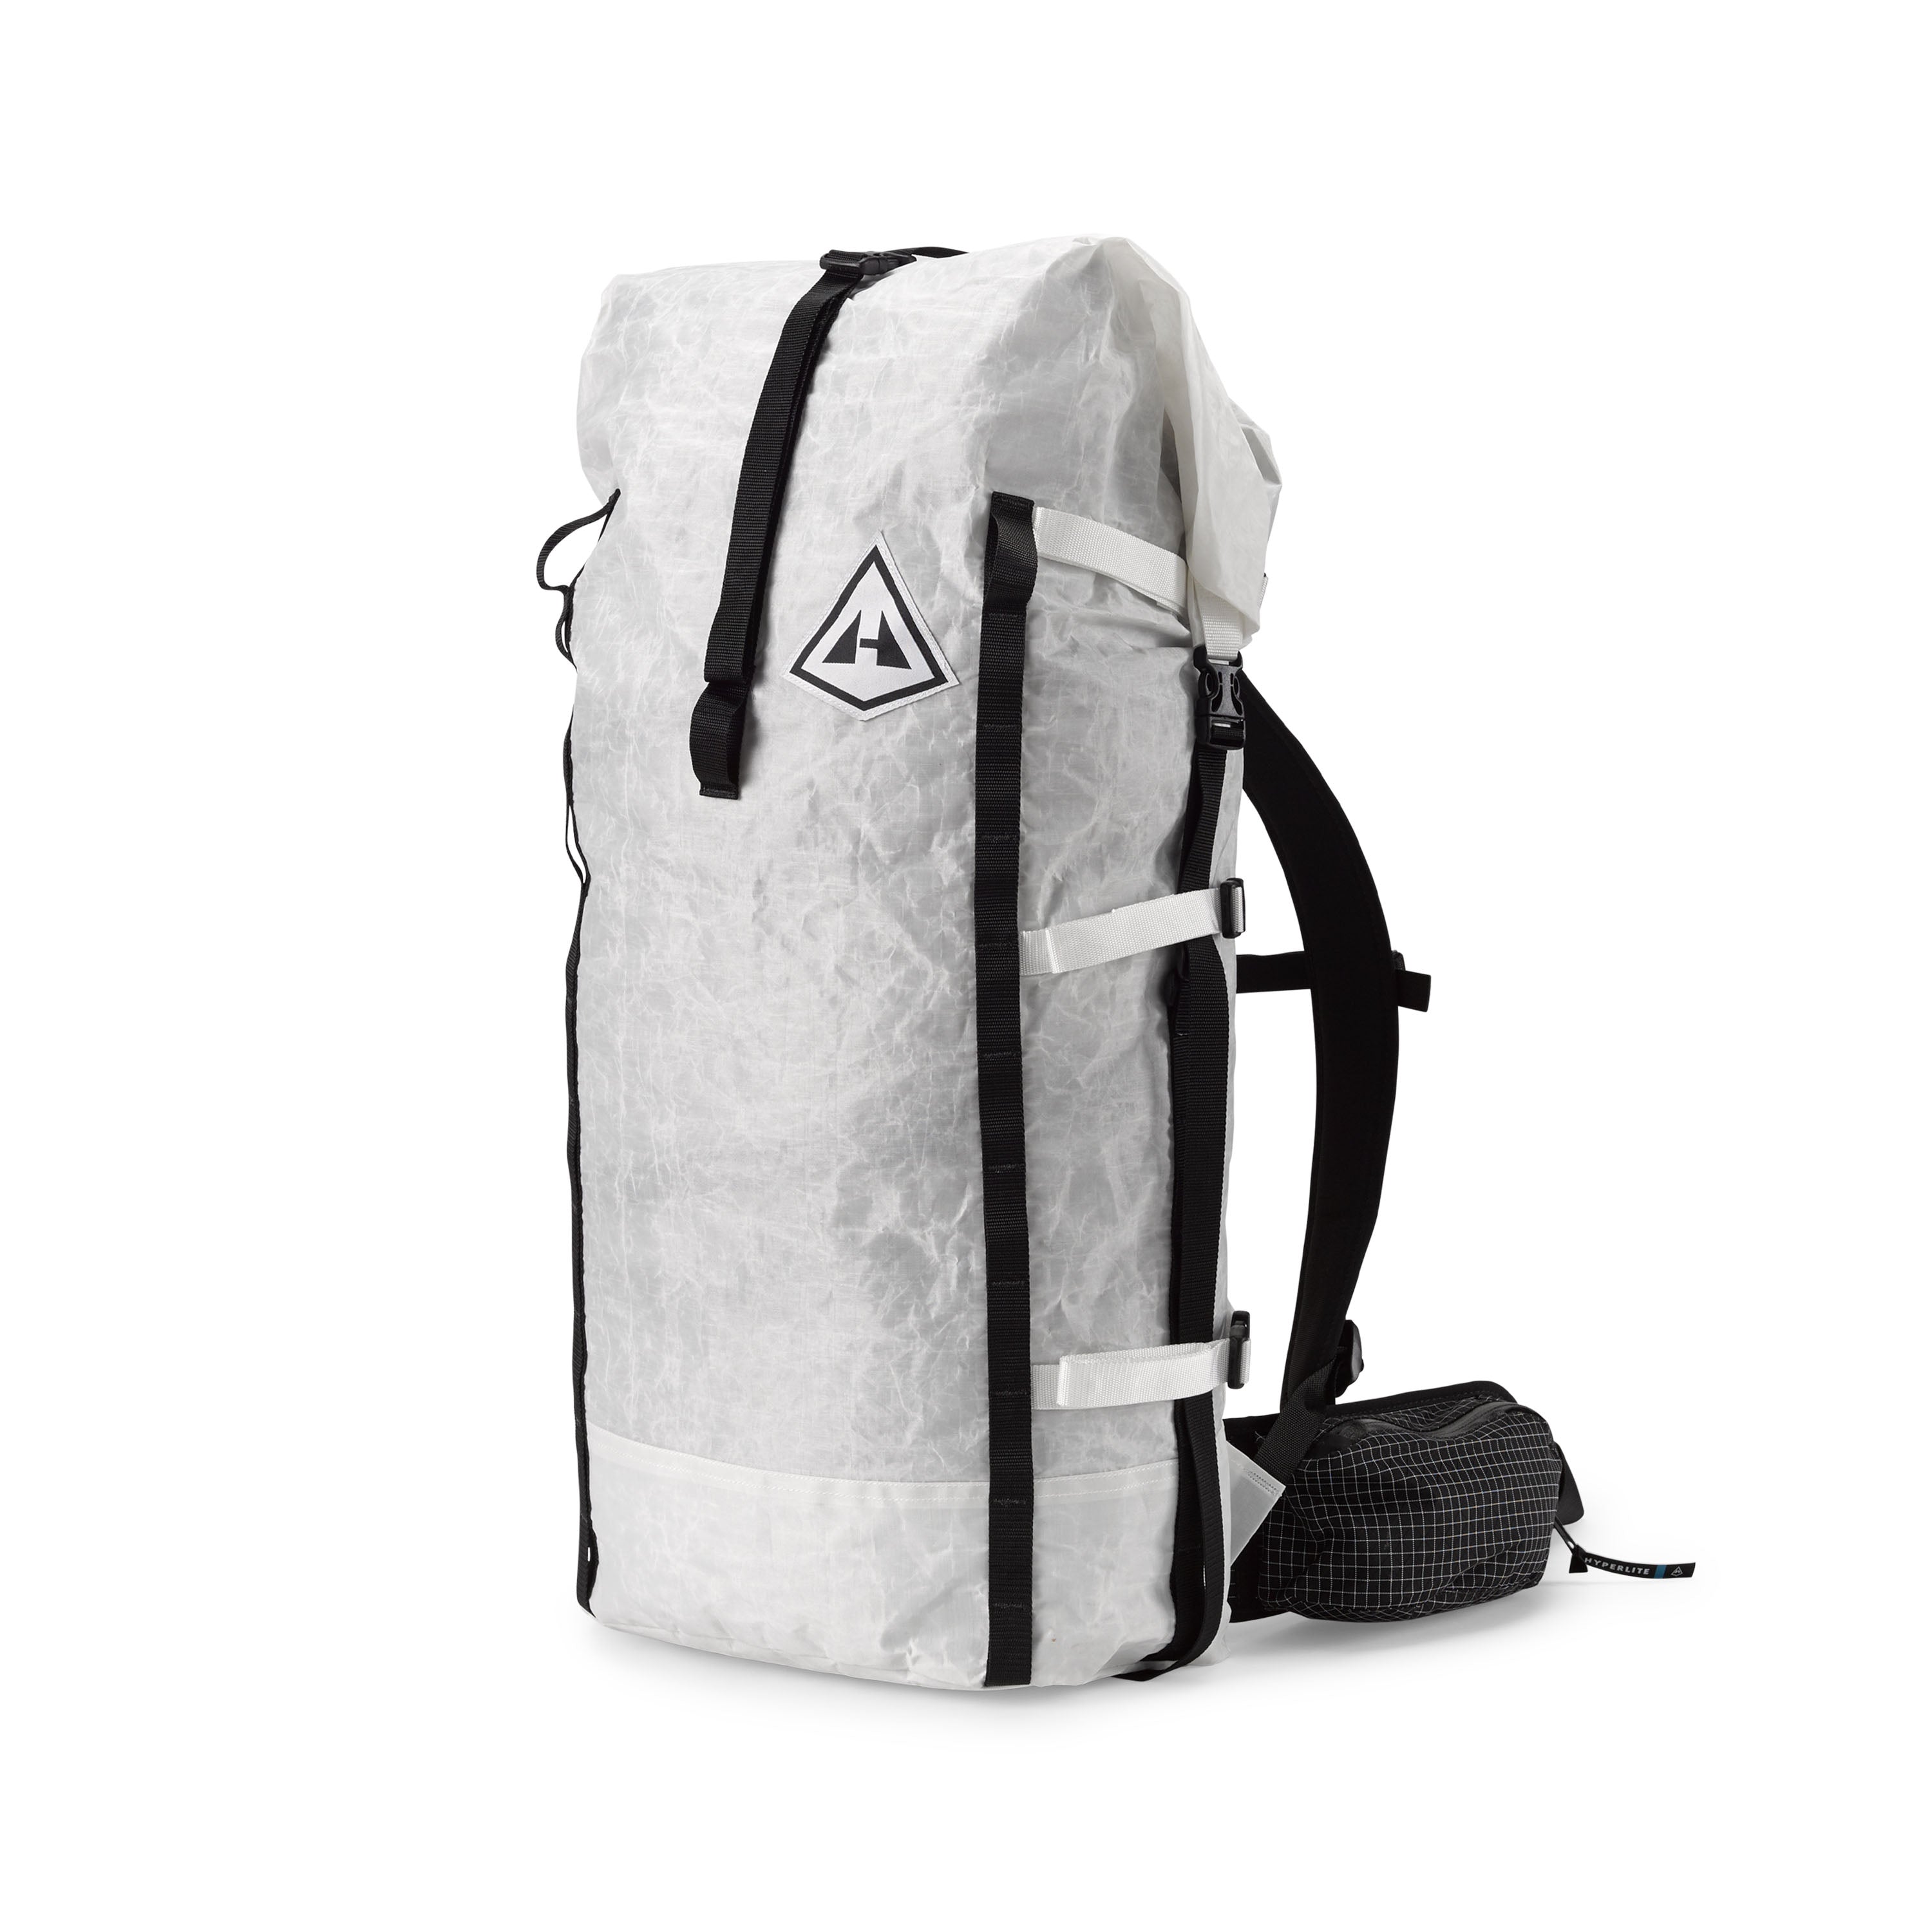 Trekkage LT Hardshell Carry-On Roller Bag | Orvis